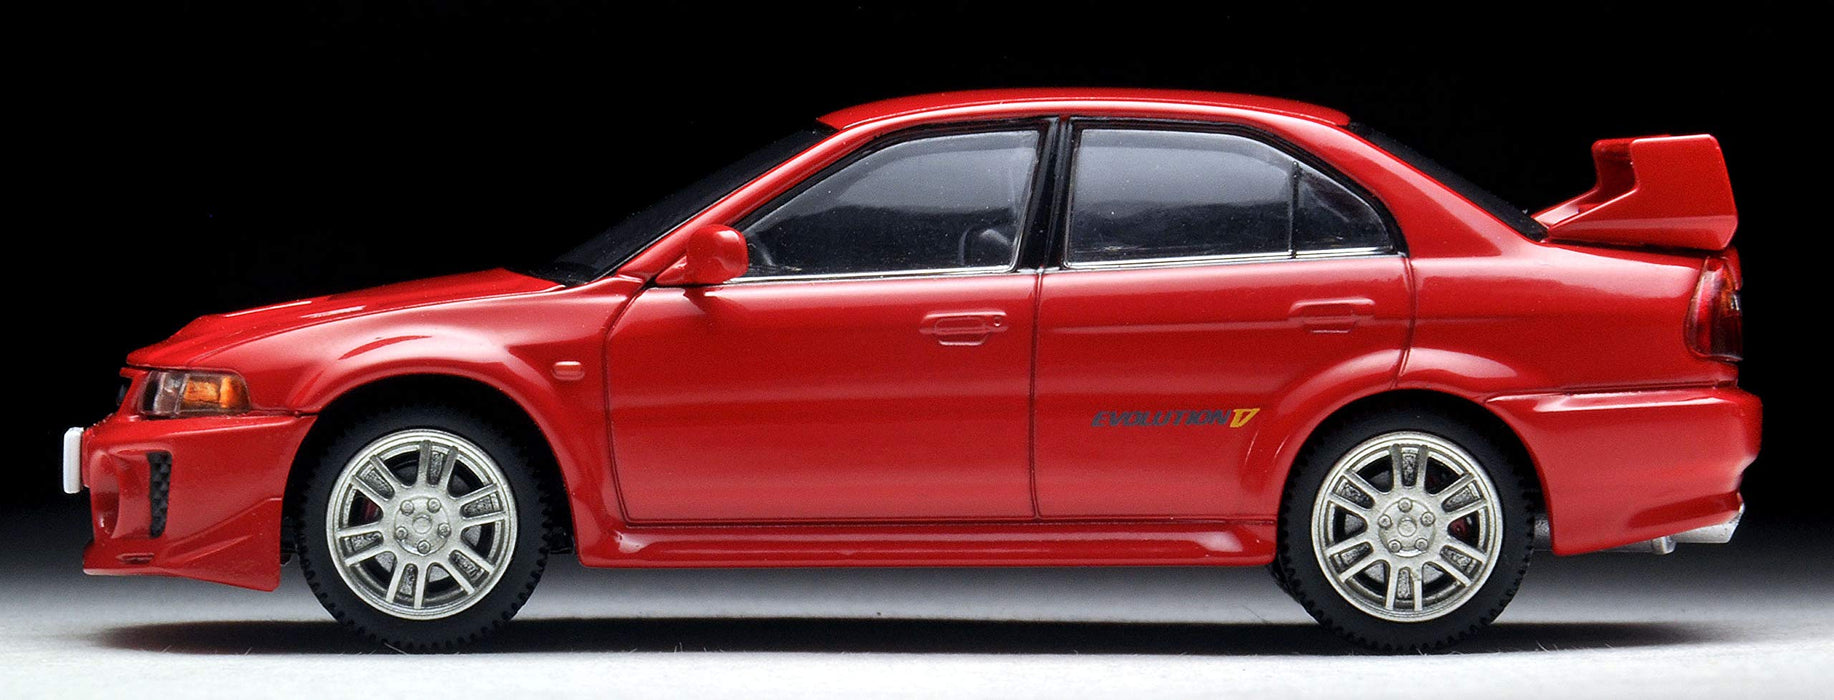 Tomytec 1/64 Scale Mitsubishi Lancer GSR Evolution V Red - Tomica Limited Vintage Neo